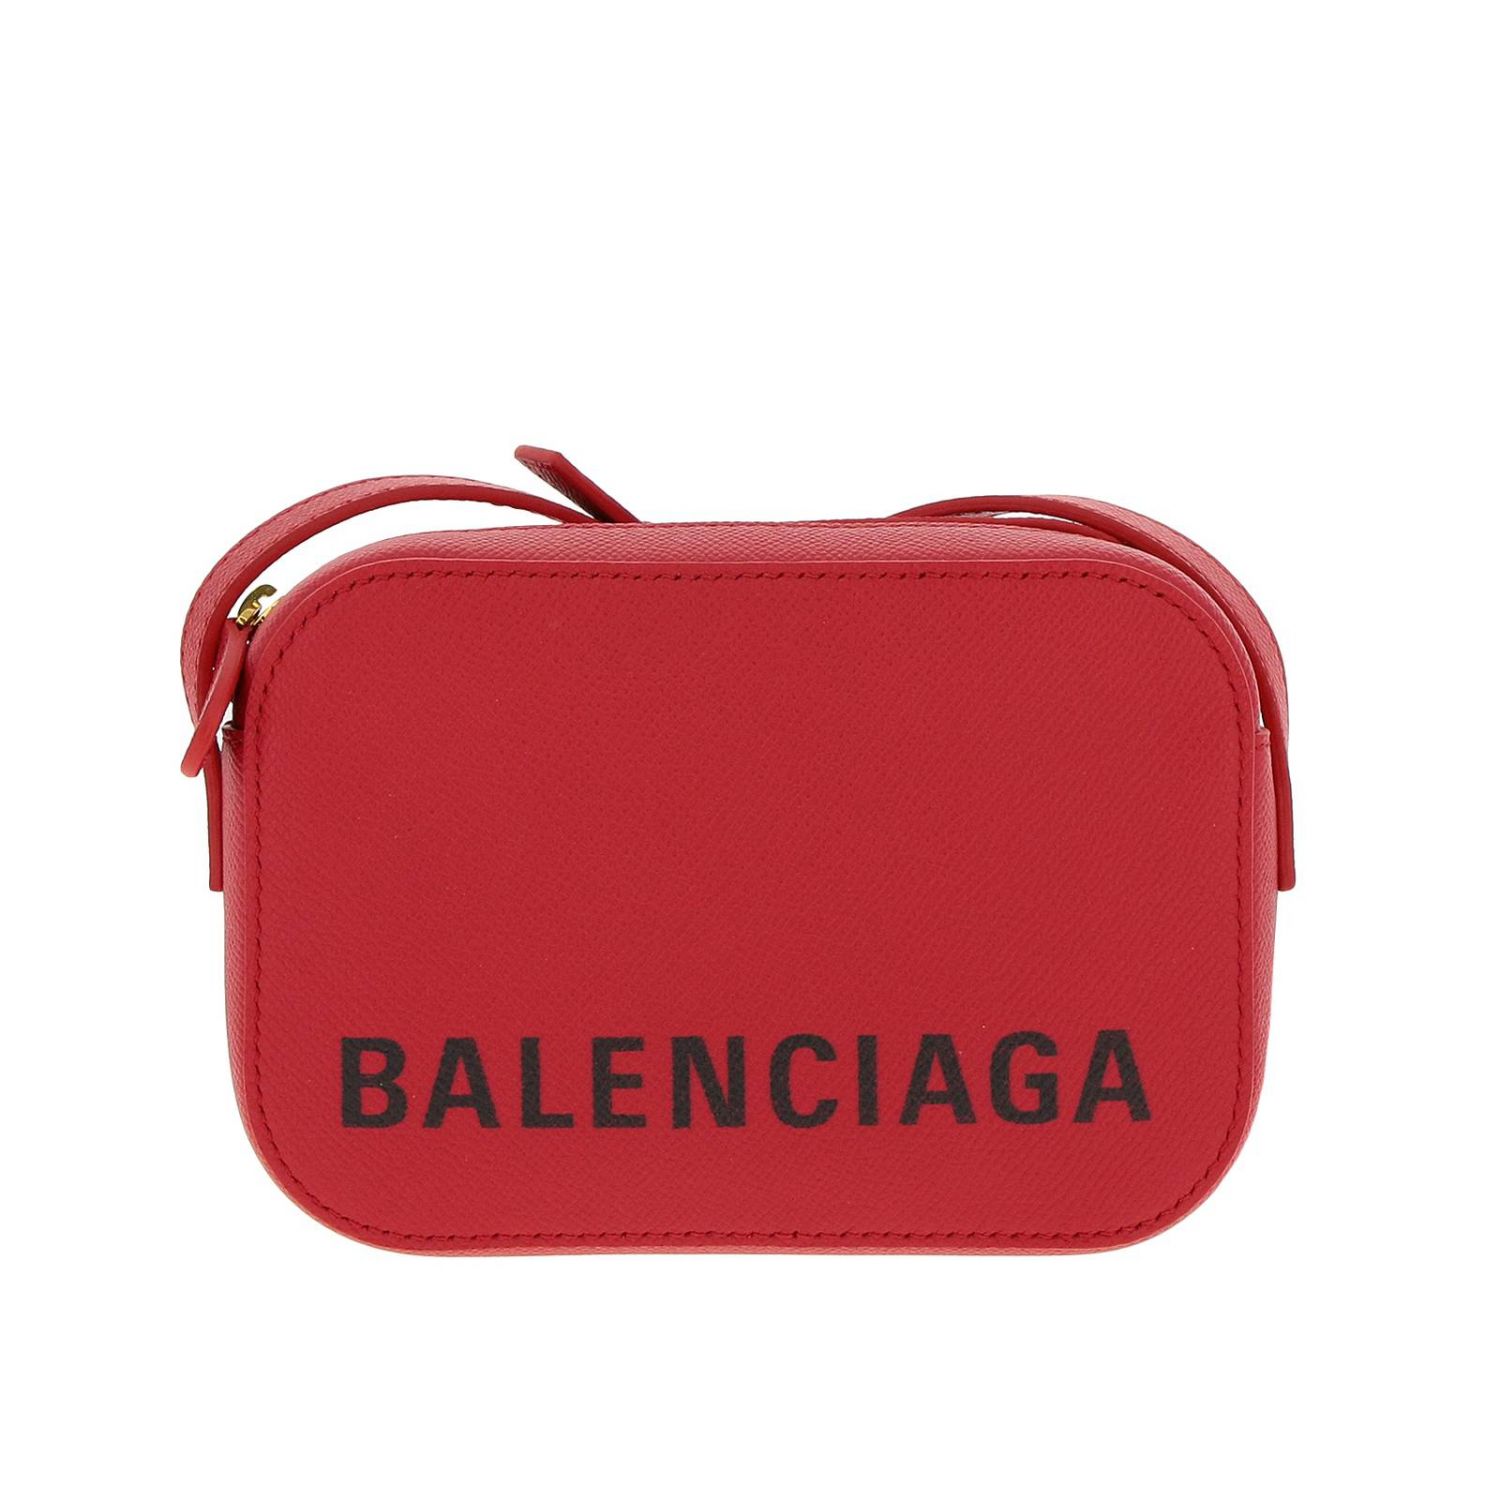 Balenciaga Outlet: mini bag for woman - Red | Balenciaga mini bag ...